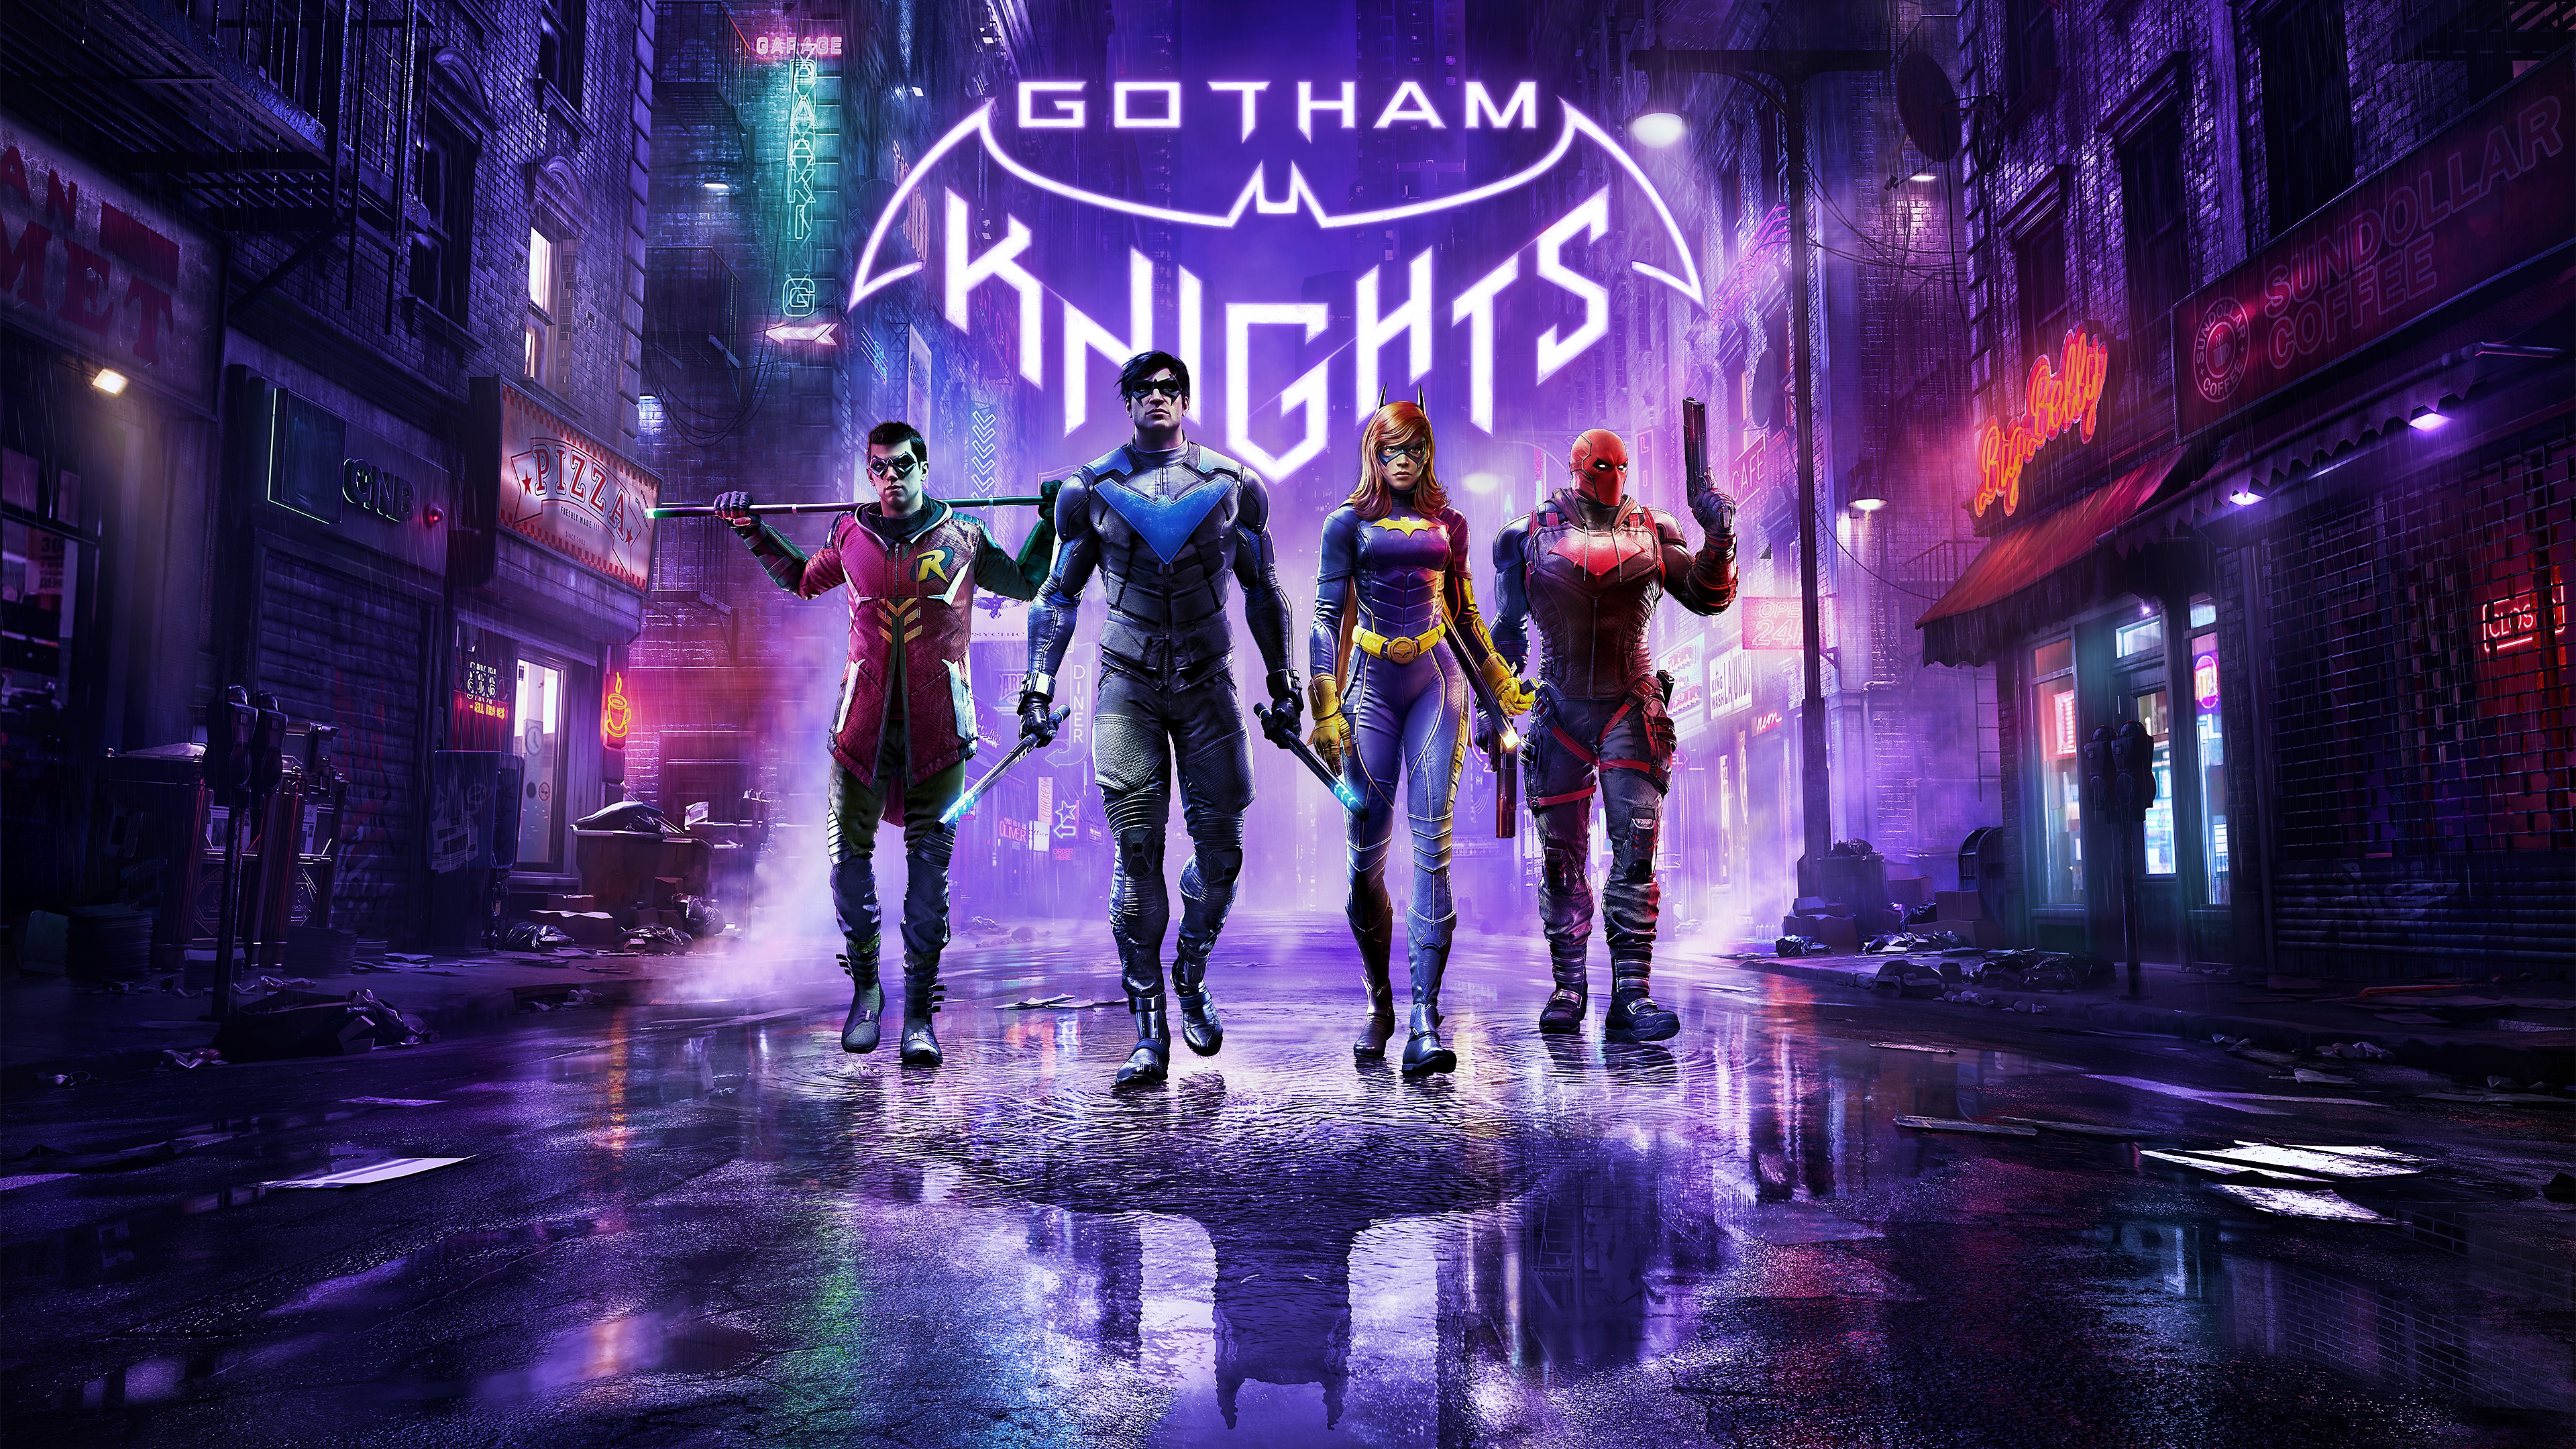 الصورة الفنية الأساسية للعبة Gotham Knights